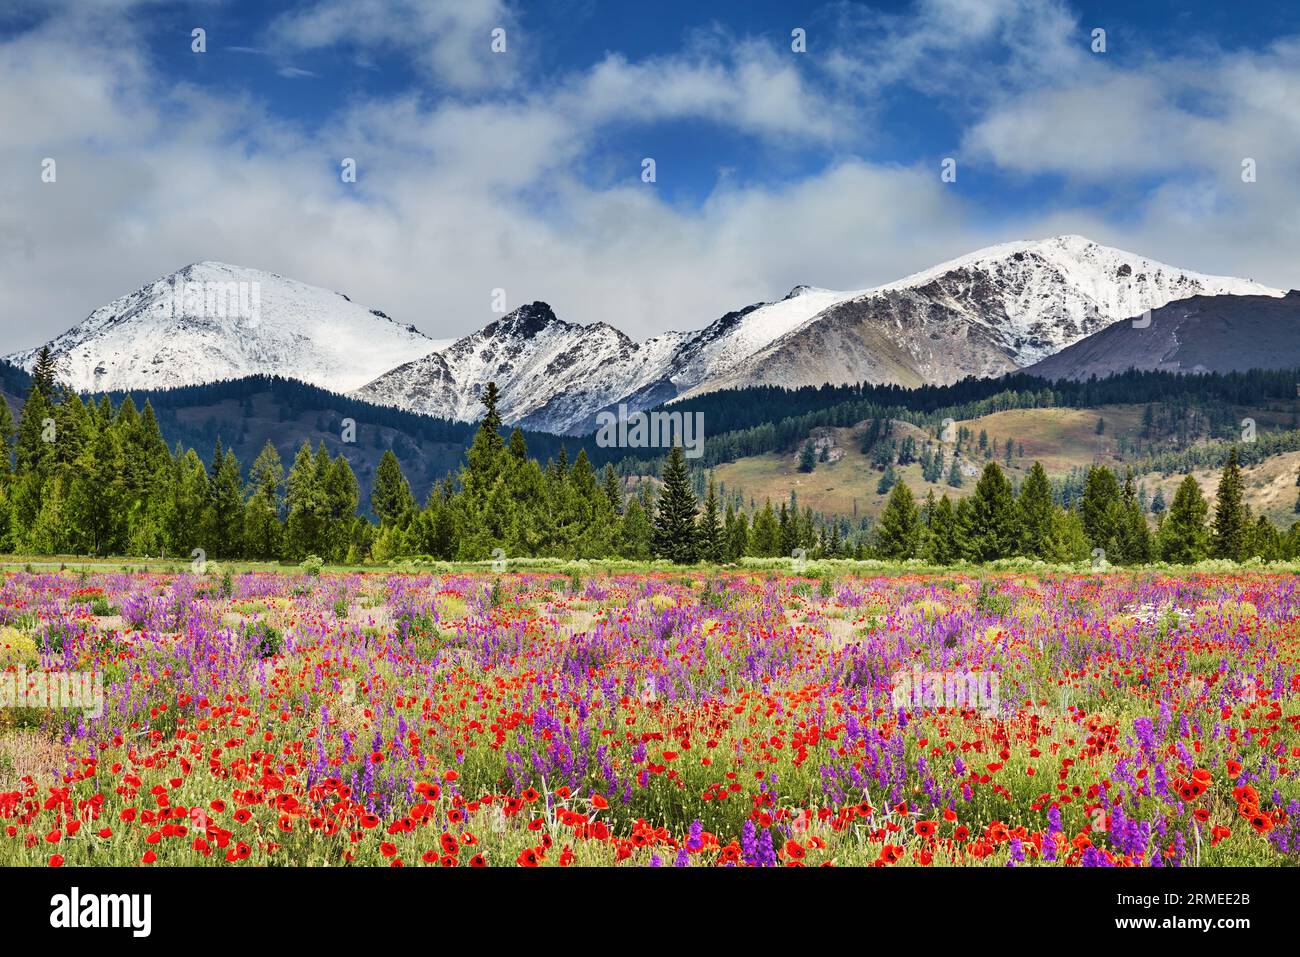 Paisaje con montañas nevadas, bosque y campo floreciente con flores silvestres Foto de stock